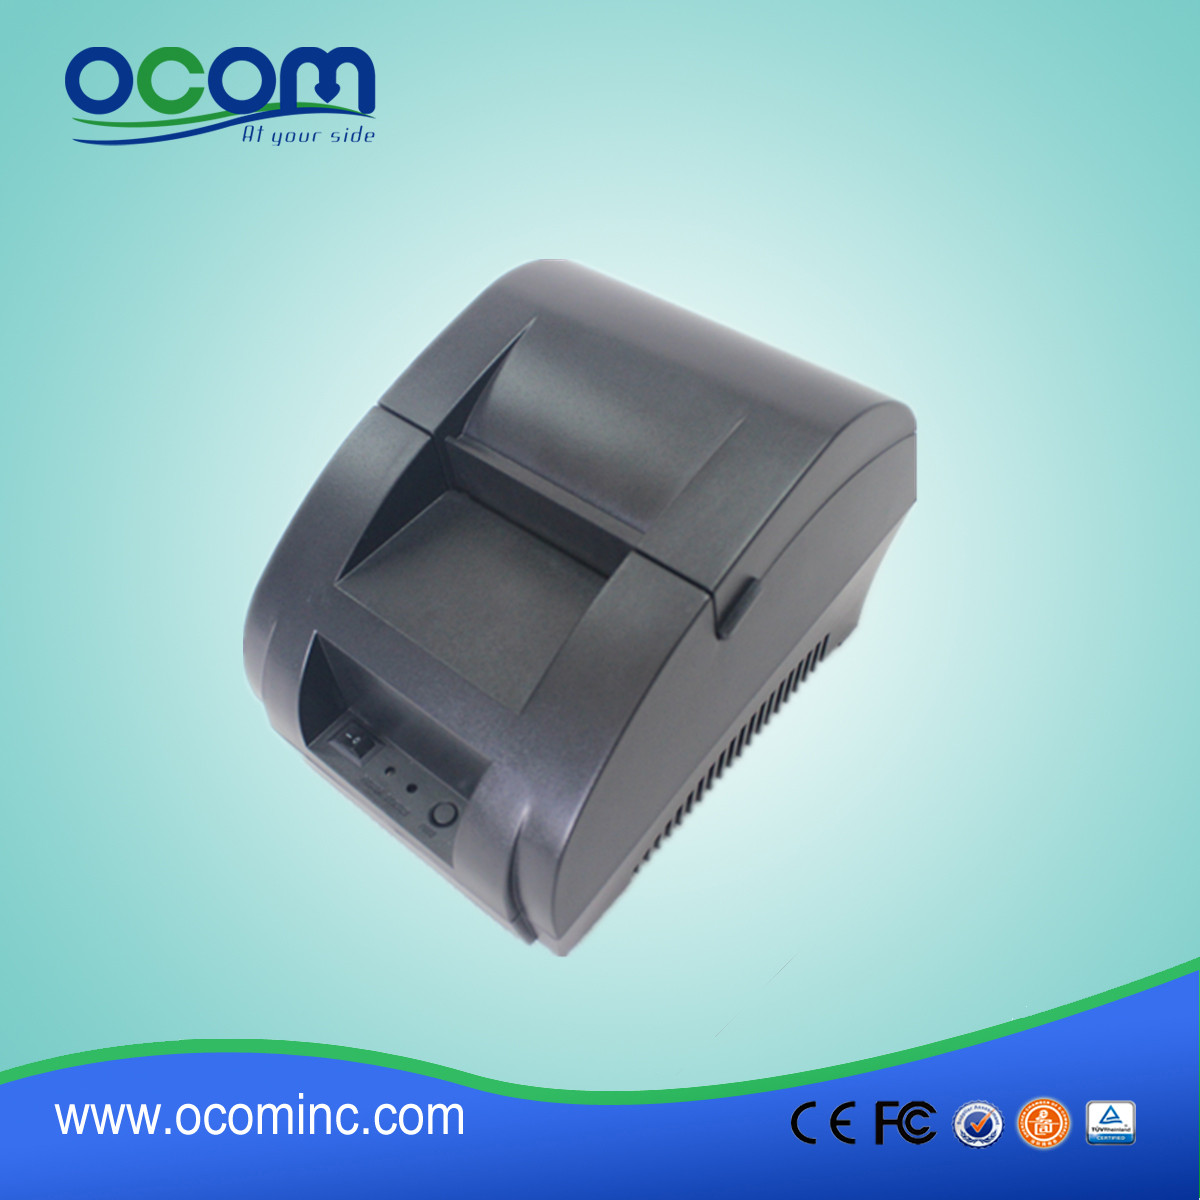 Impressora de recibos térmicos de 58mm com adaptador de alimentação incorporado OCPP-58Z-U